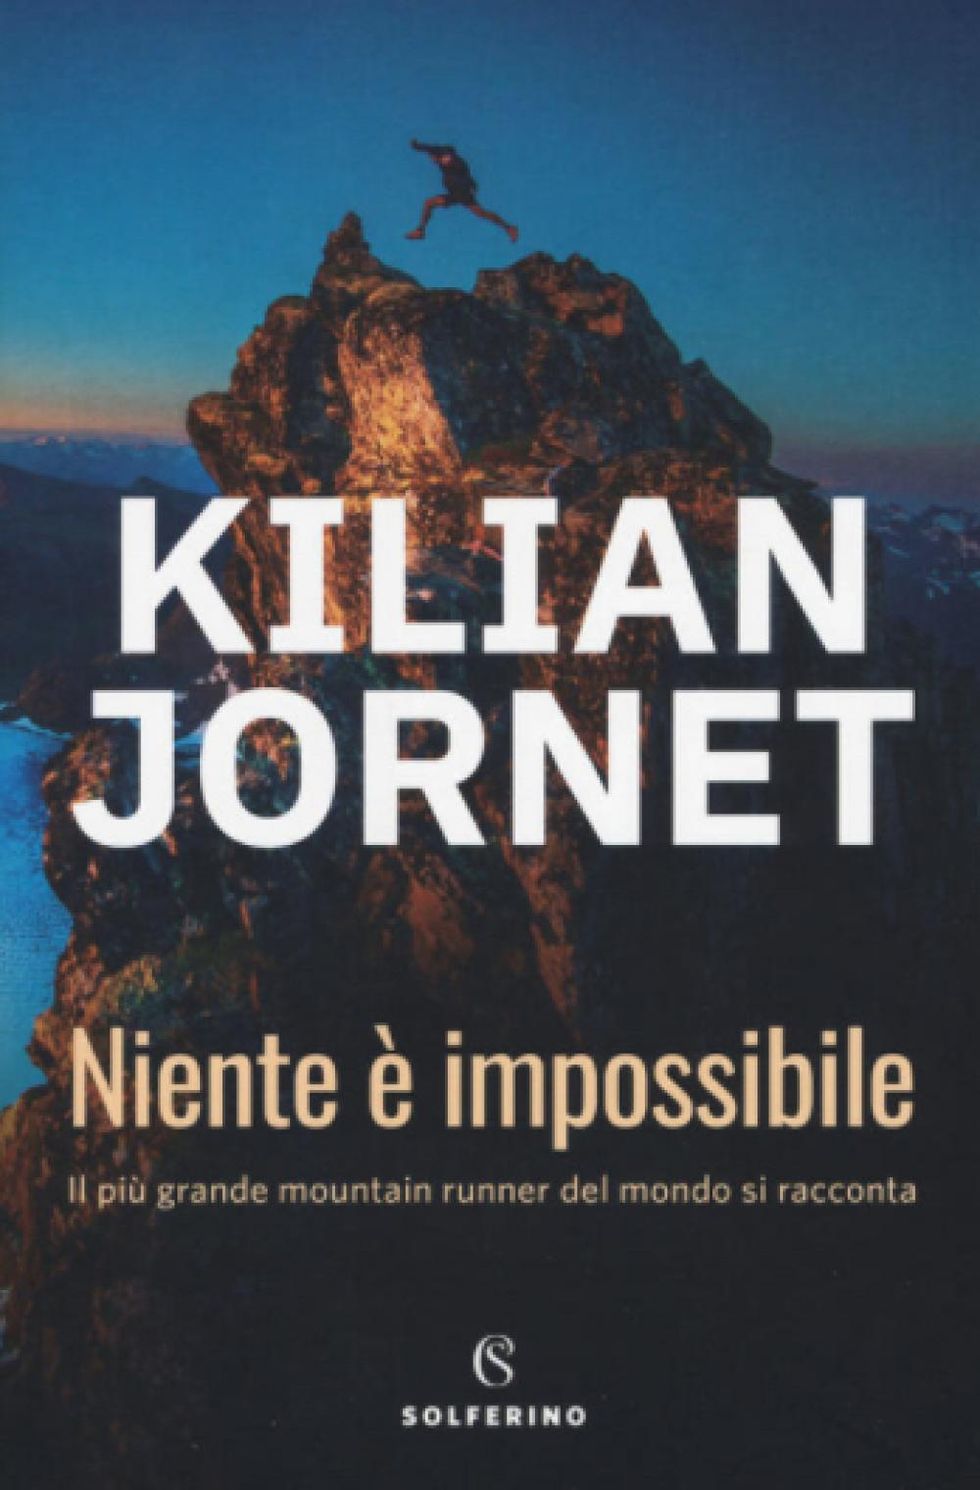 Niente è impossibile - di Kilian Jornet. 250 pagine. Traduttore Roberta Bovaia, 2019 Solferino Editore. Prezzo: 17 euro